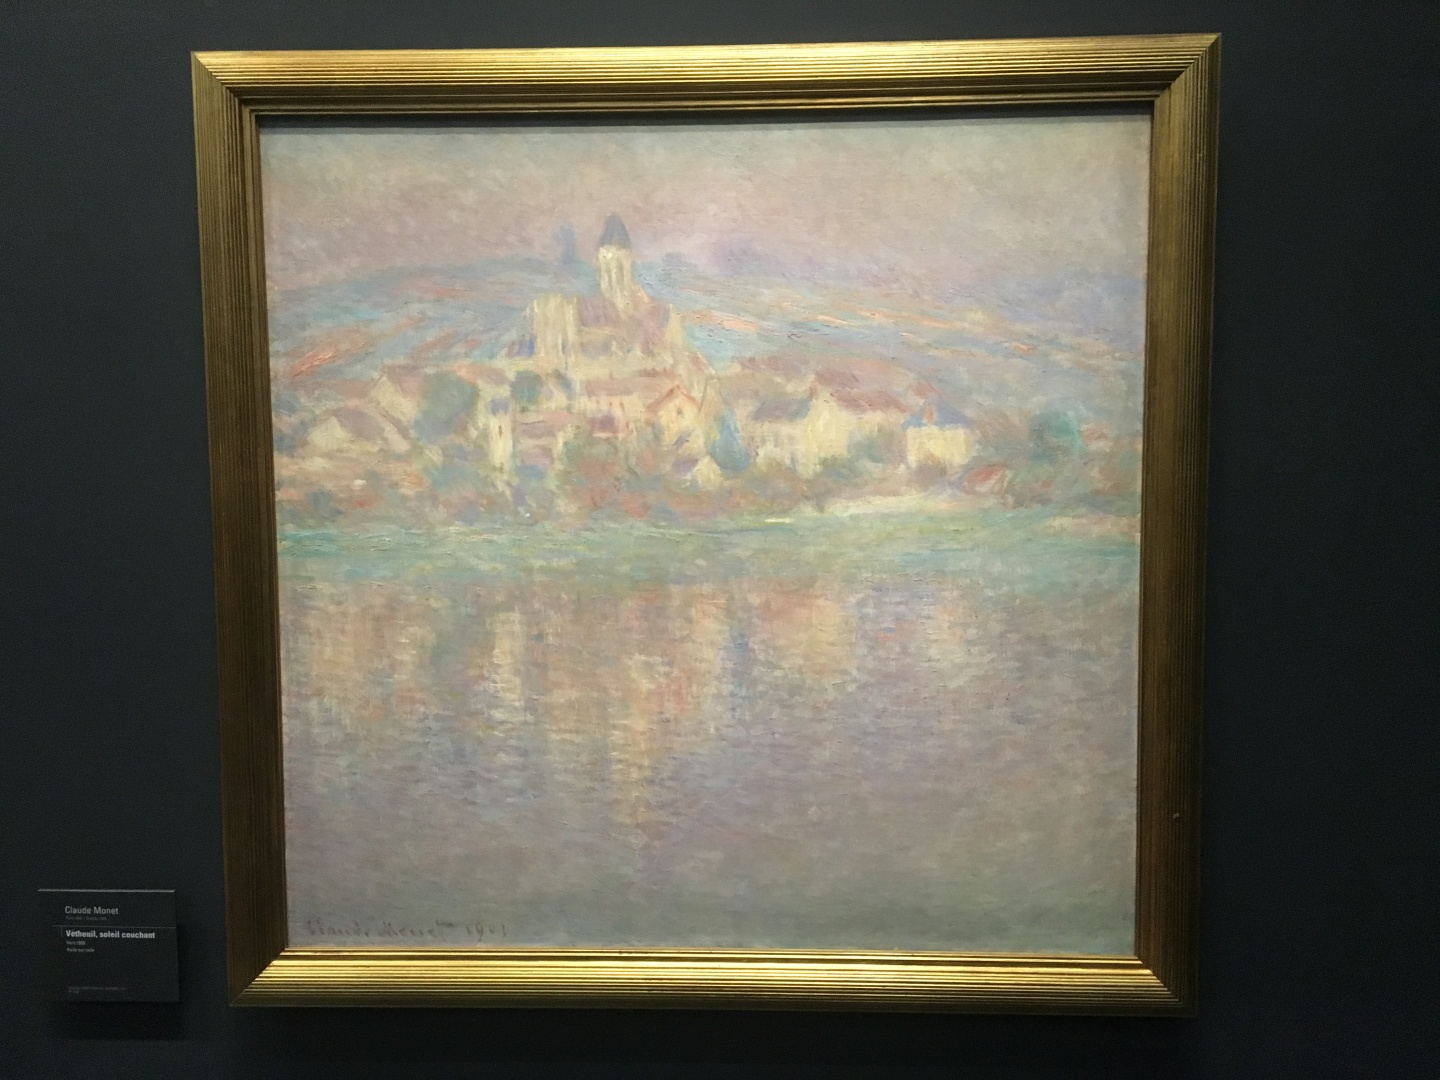 Claude Monet Vtheuil, soleil couchant